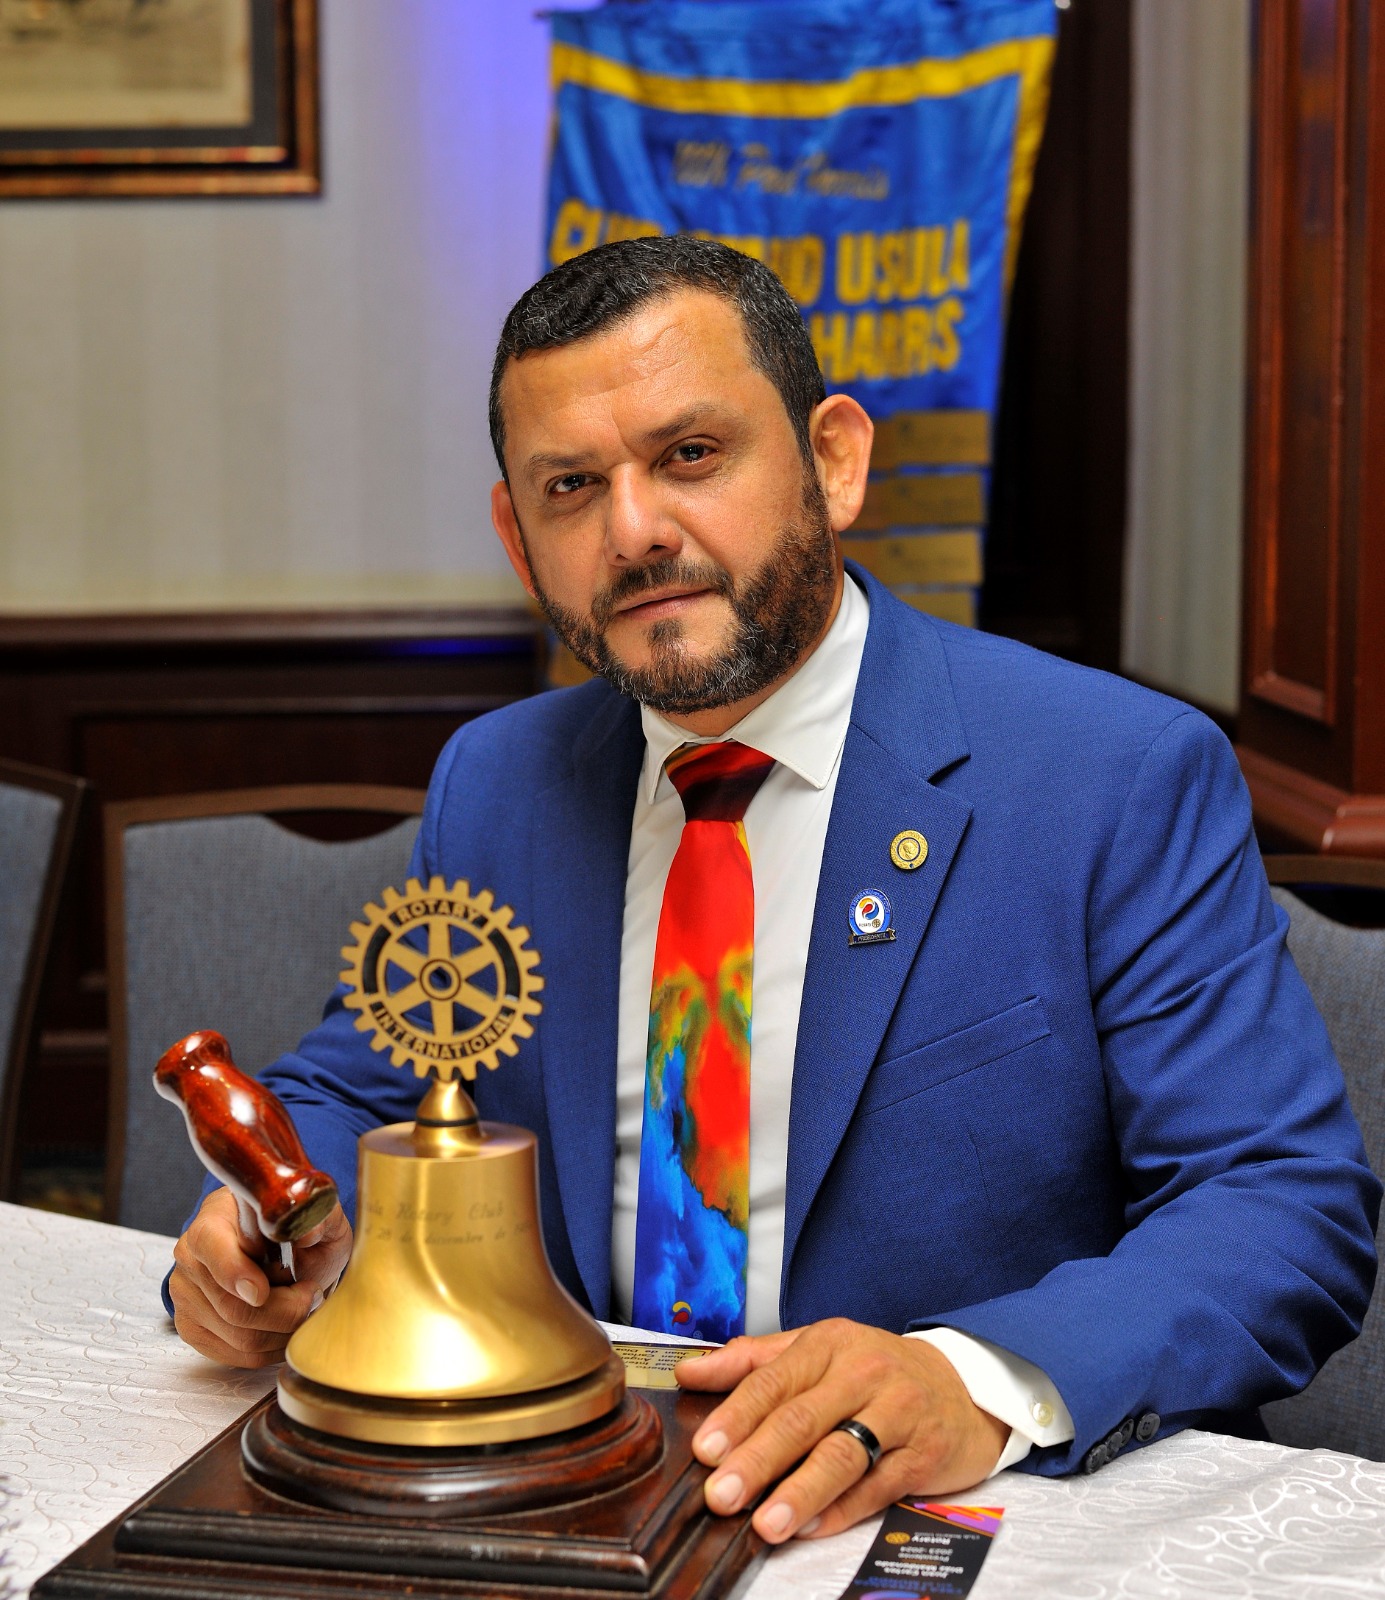 Creador de esperanza y desarrollo: Juan Carlos Díaz asume presidencia de Usula Rotary Club